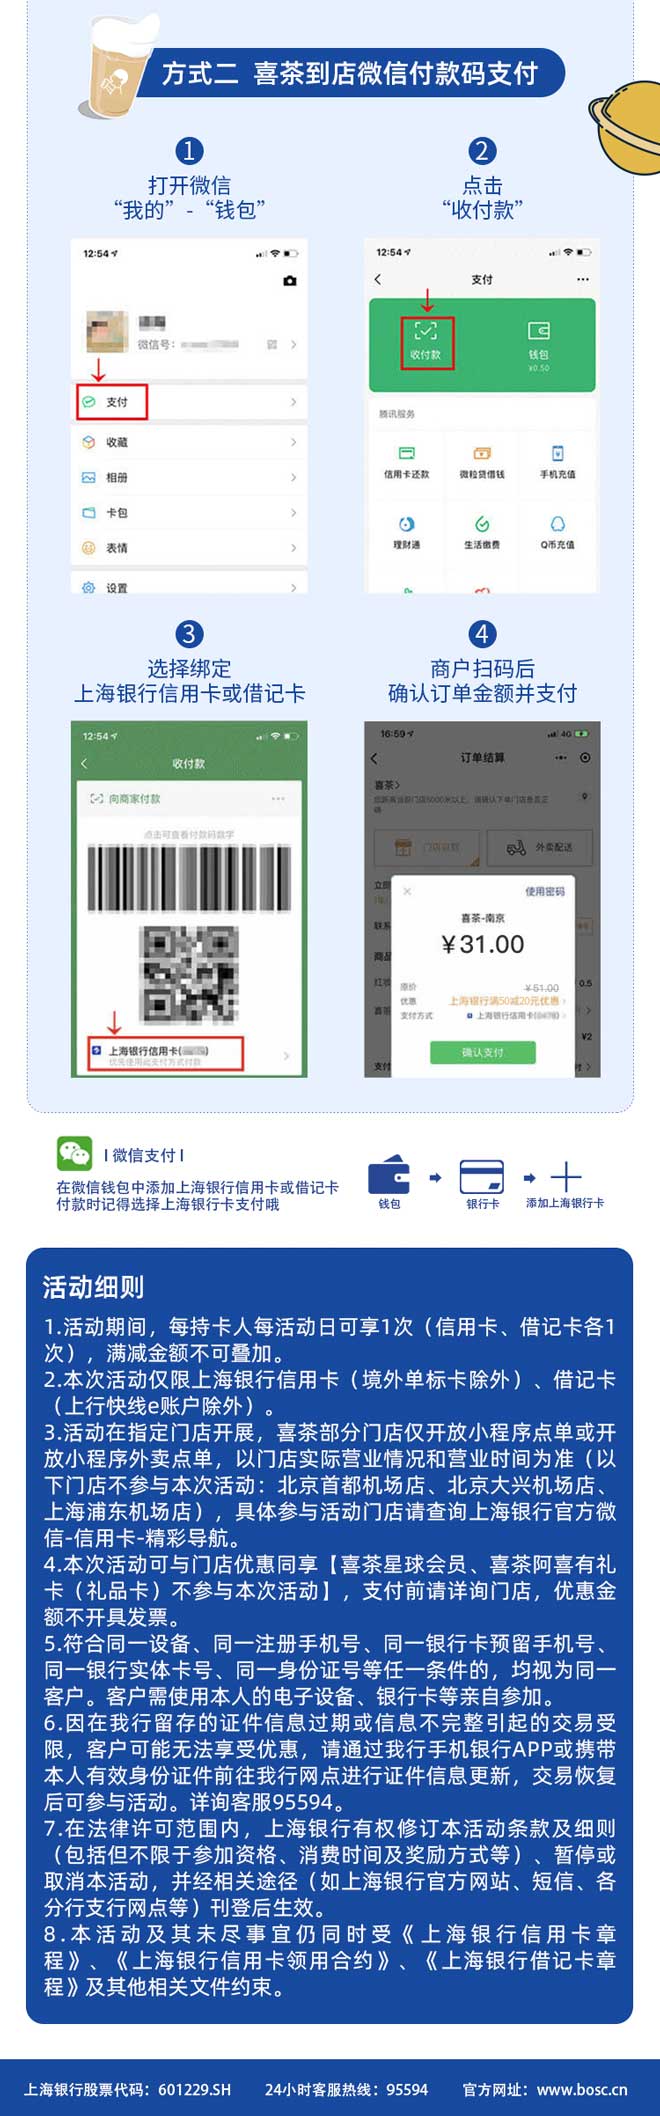 上海银行信用卡喜茶满50-20元